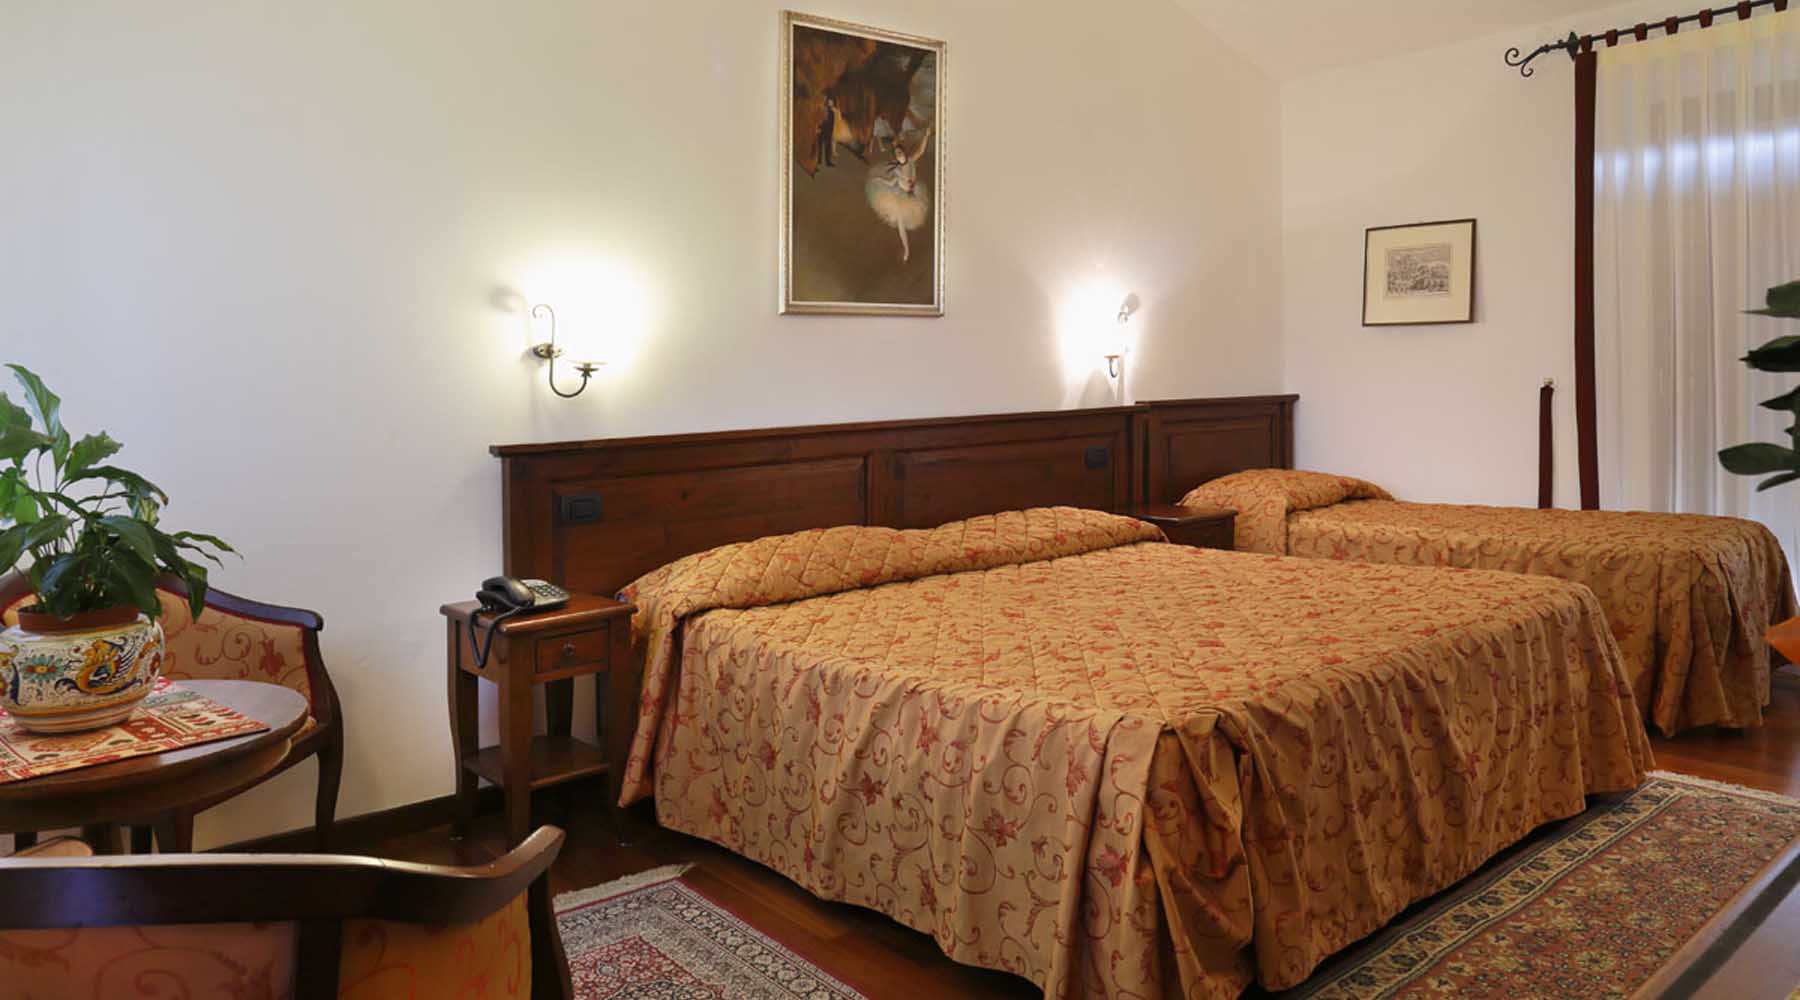 Tripla Albergo - Hotel - Urbino - Marche